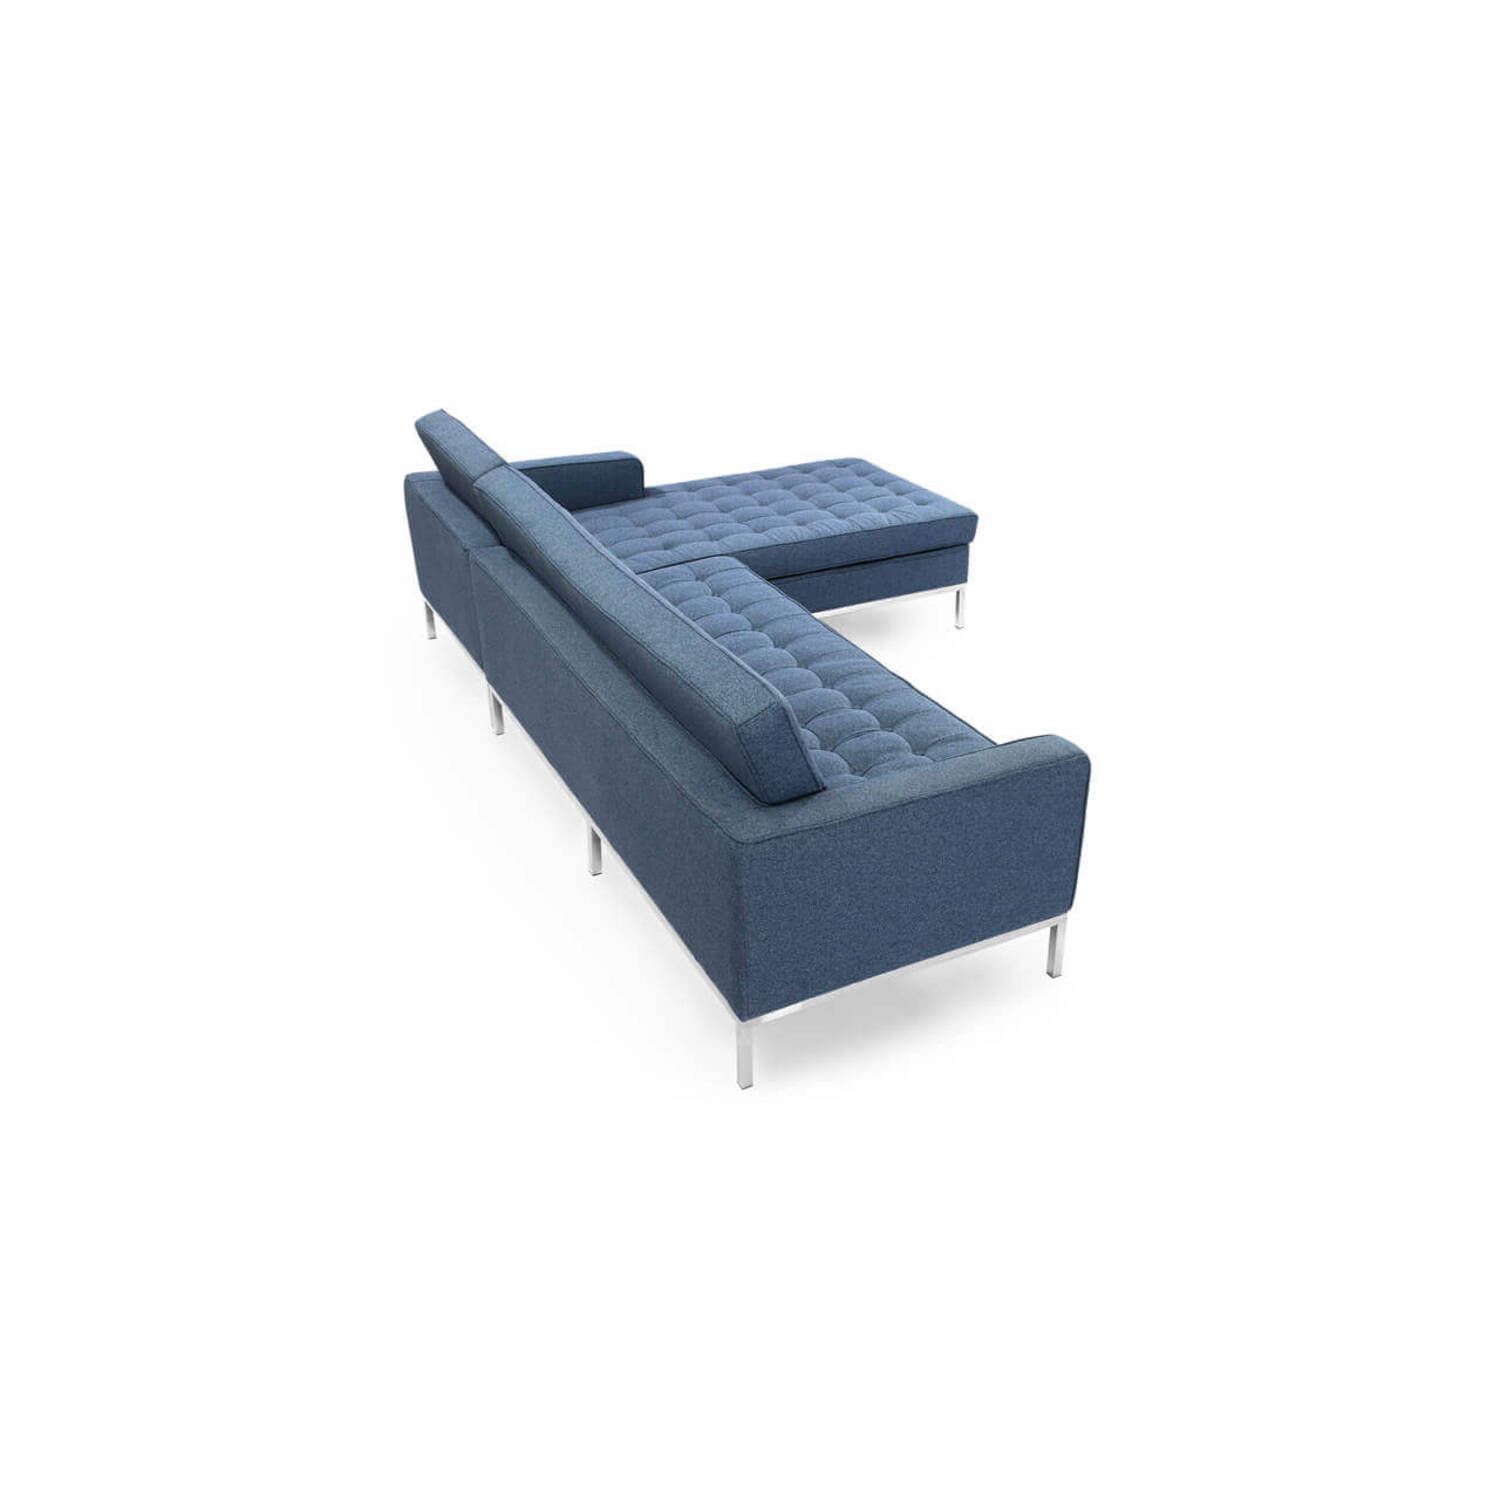 Синий модульный диван Florence